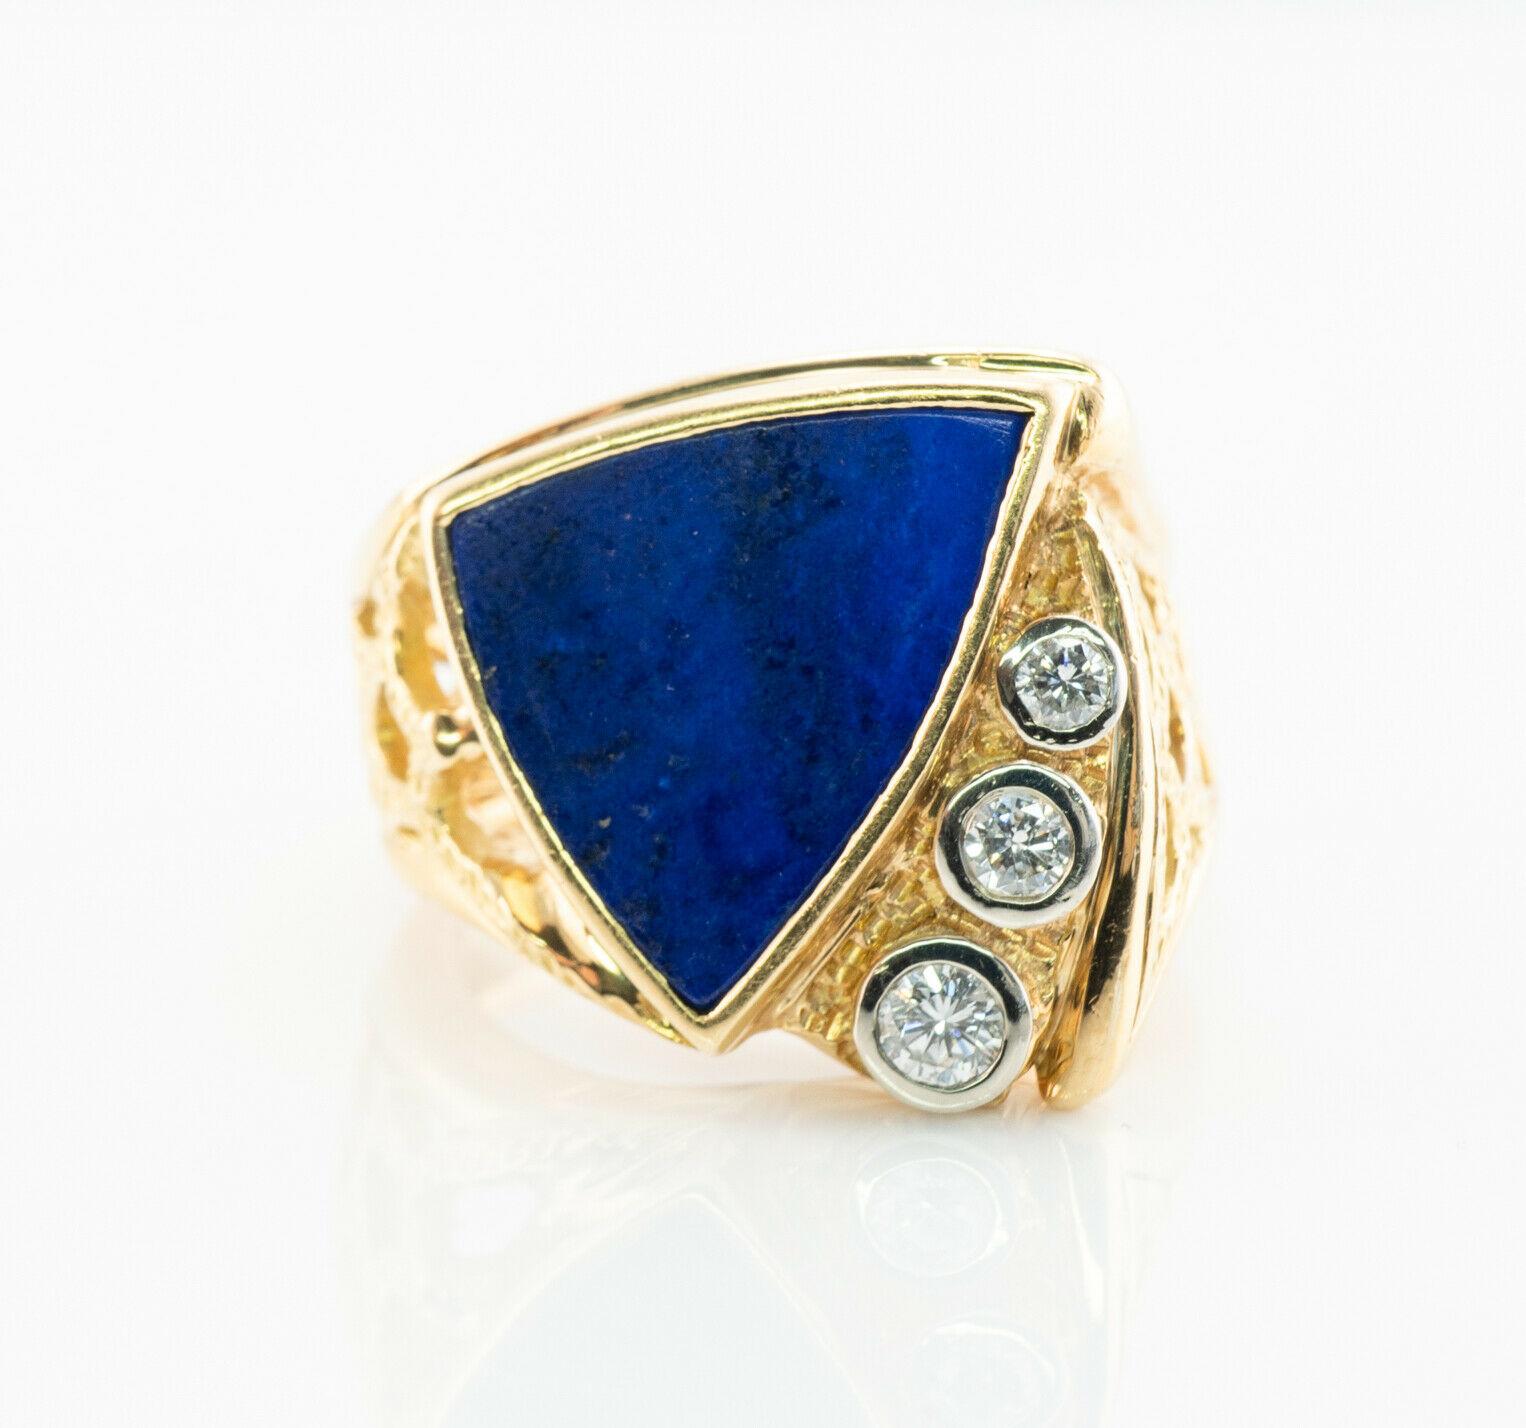 Dieser ungewöhnliche Vintage-Ring ist aus massivem 18-karätigem Gelbgold gefertigt (sorgfältig geprüft und garantiert) und mit natürlichem blauen Lapislazuli und Diamanten besetzt. Der Mittelstein misst etwa 15 mm x 14 mm. Wunderschöne königsblaue